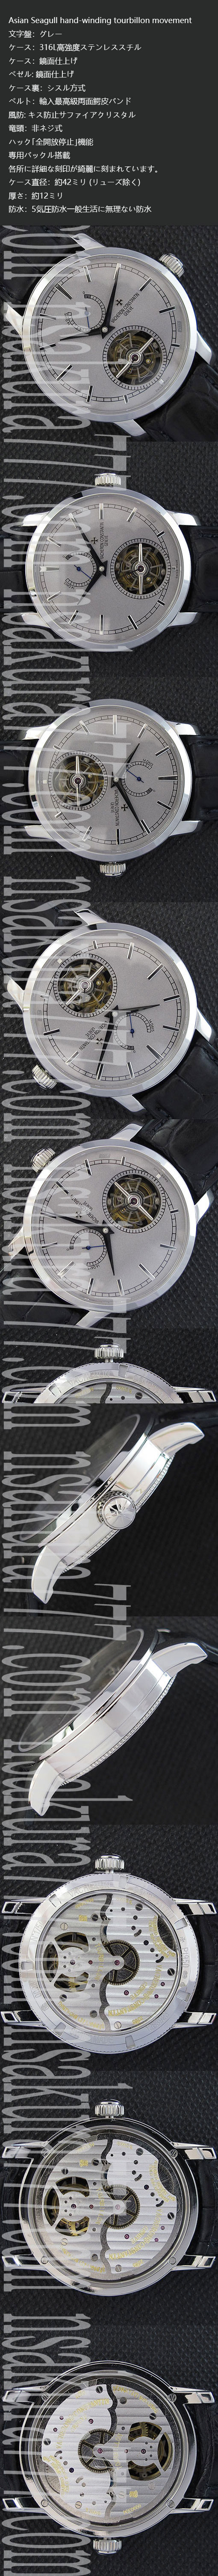 最高級バセロン コンスタンチン　トラディショナル・14デイズ ・トゥールビヨン コピー時計